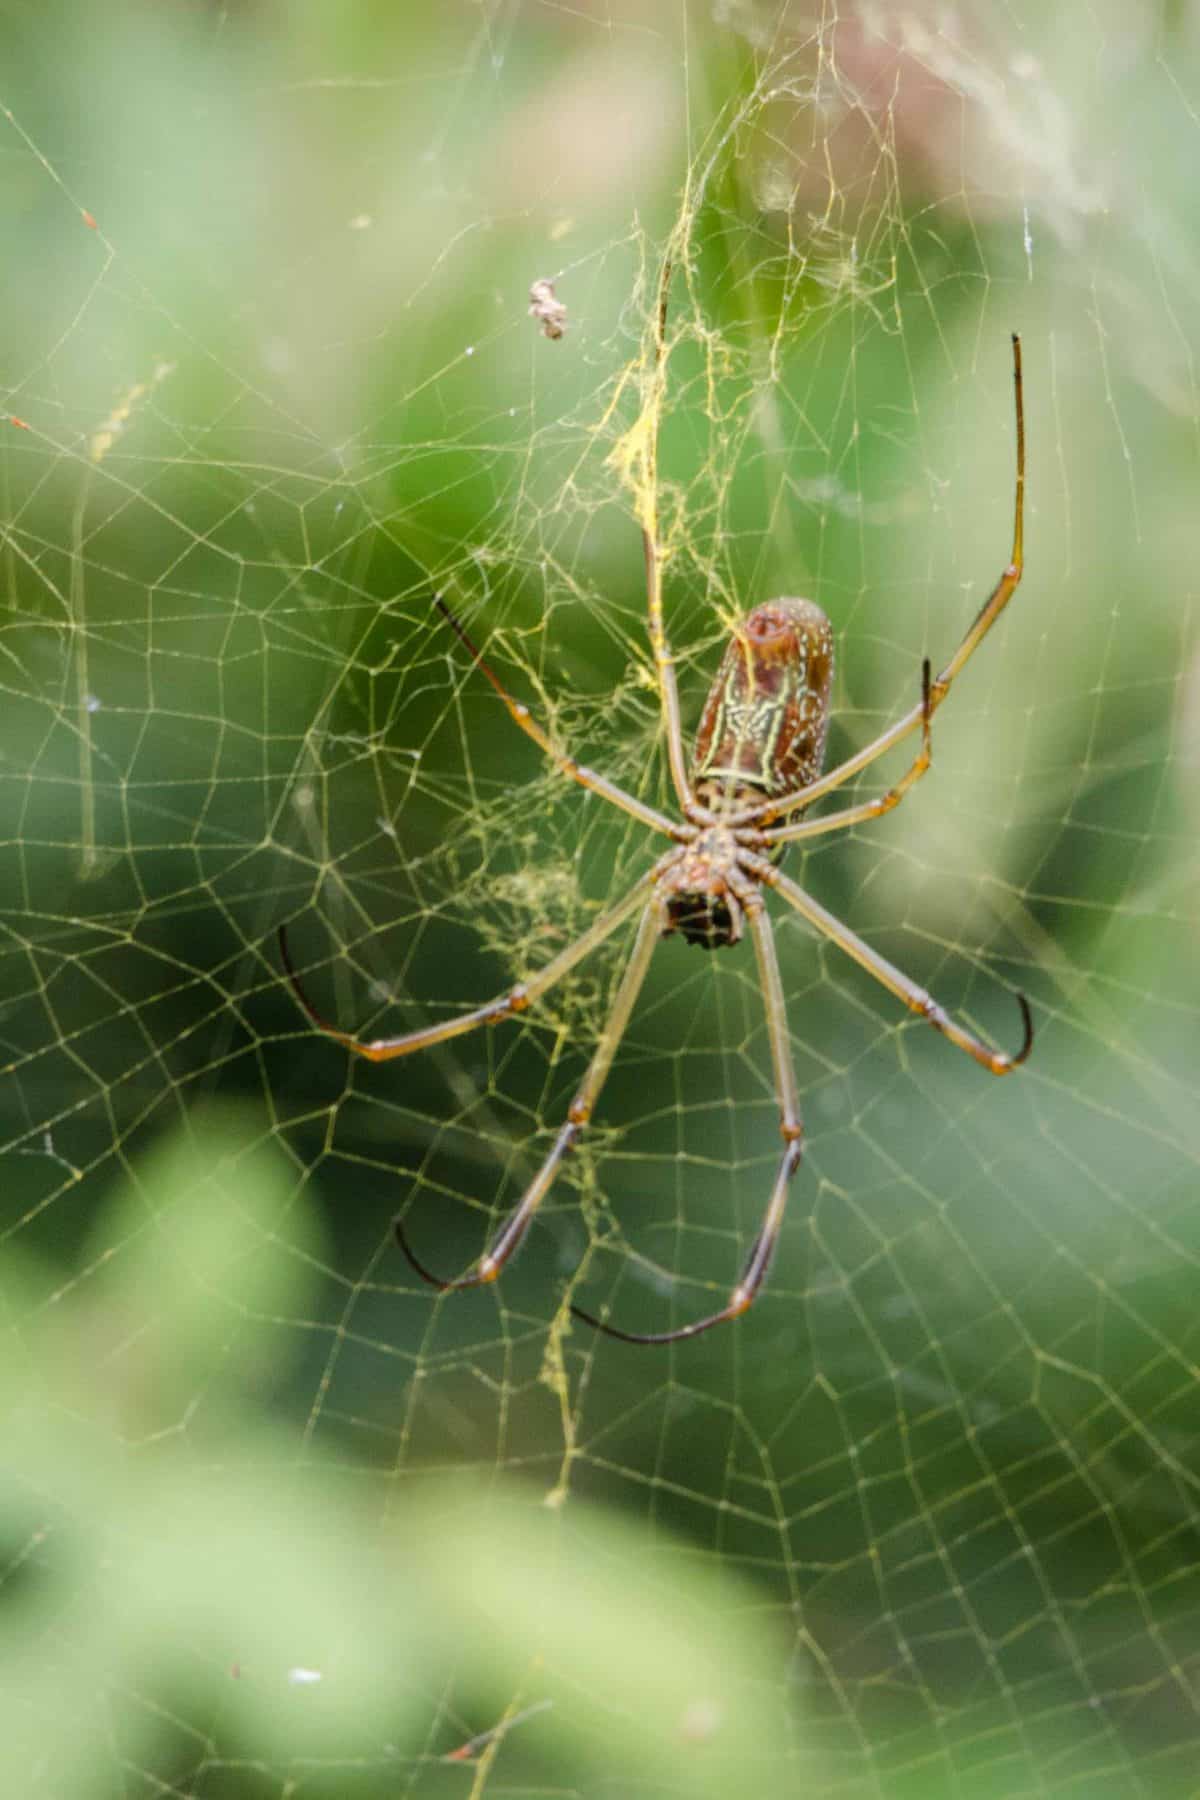 A Spider, Loja Province, Ecuador